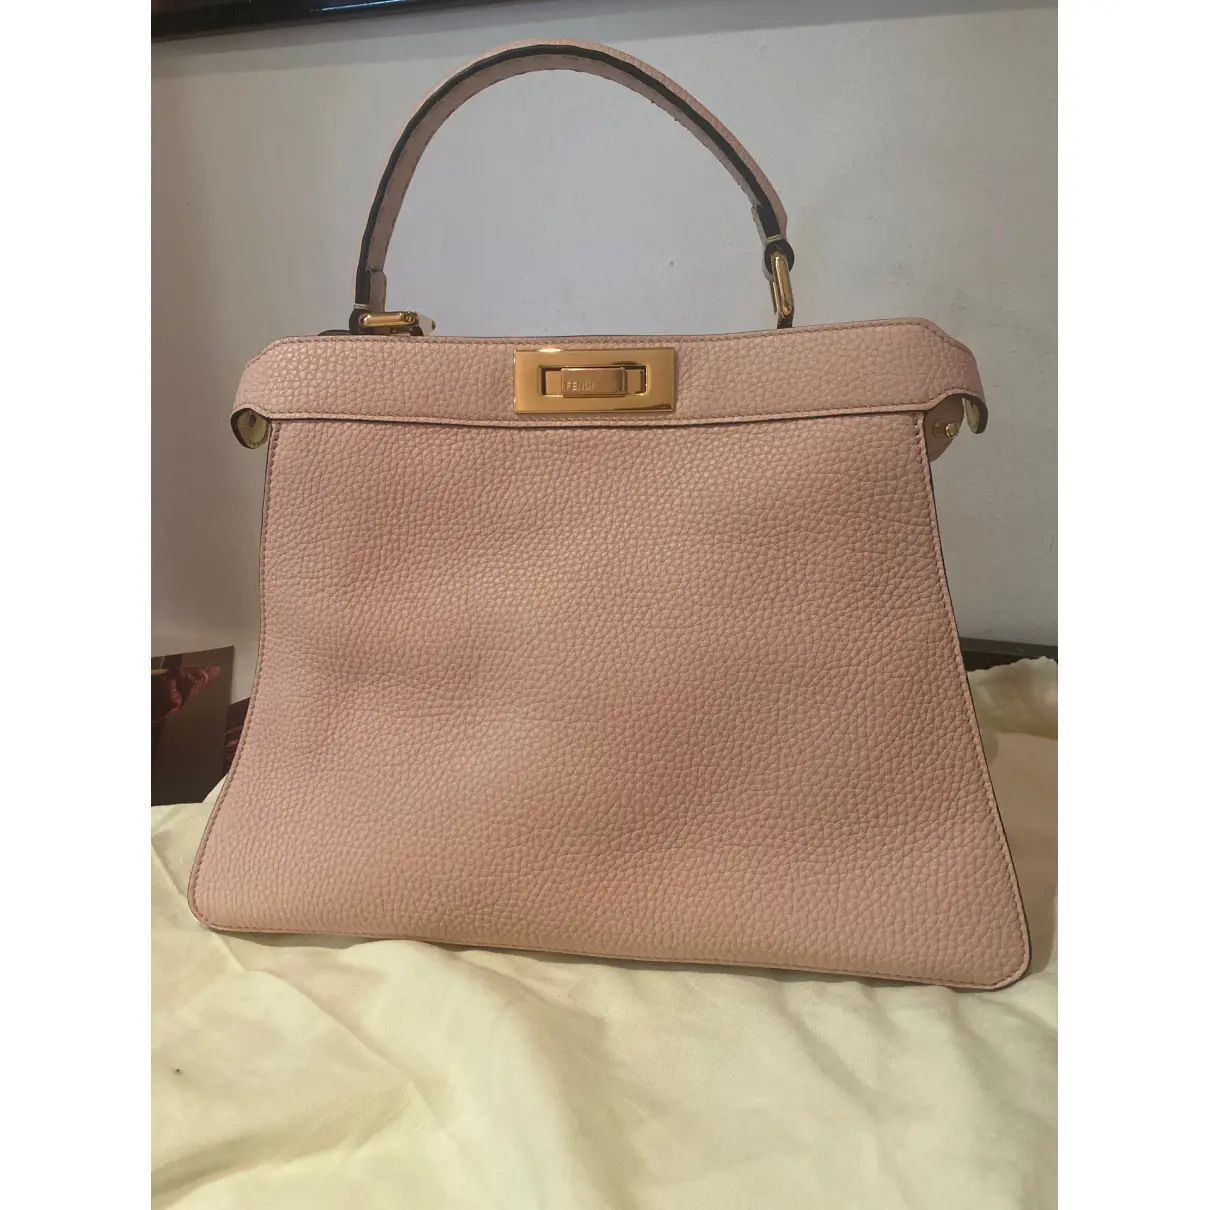 Buy Fendi Peekaboo IseeU leather handbag online